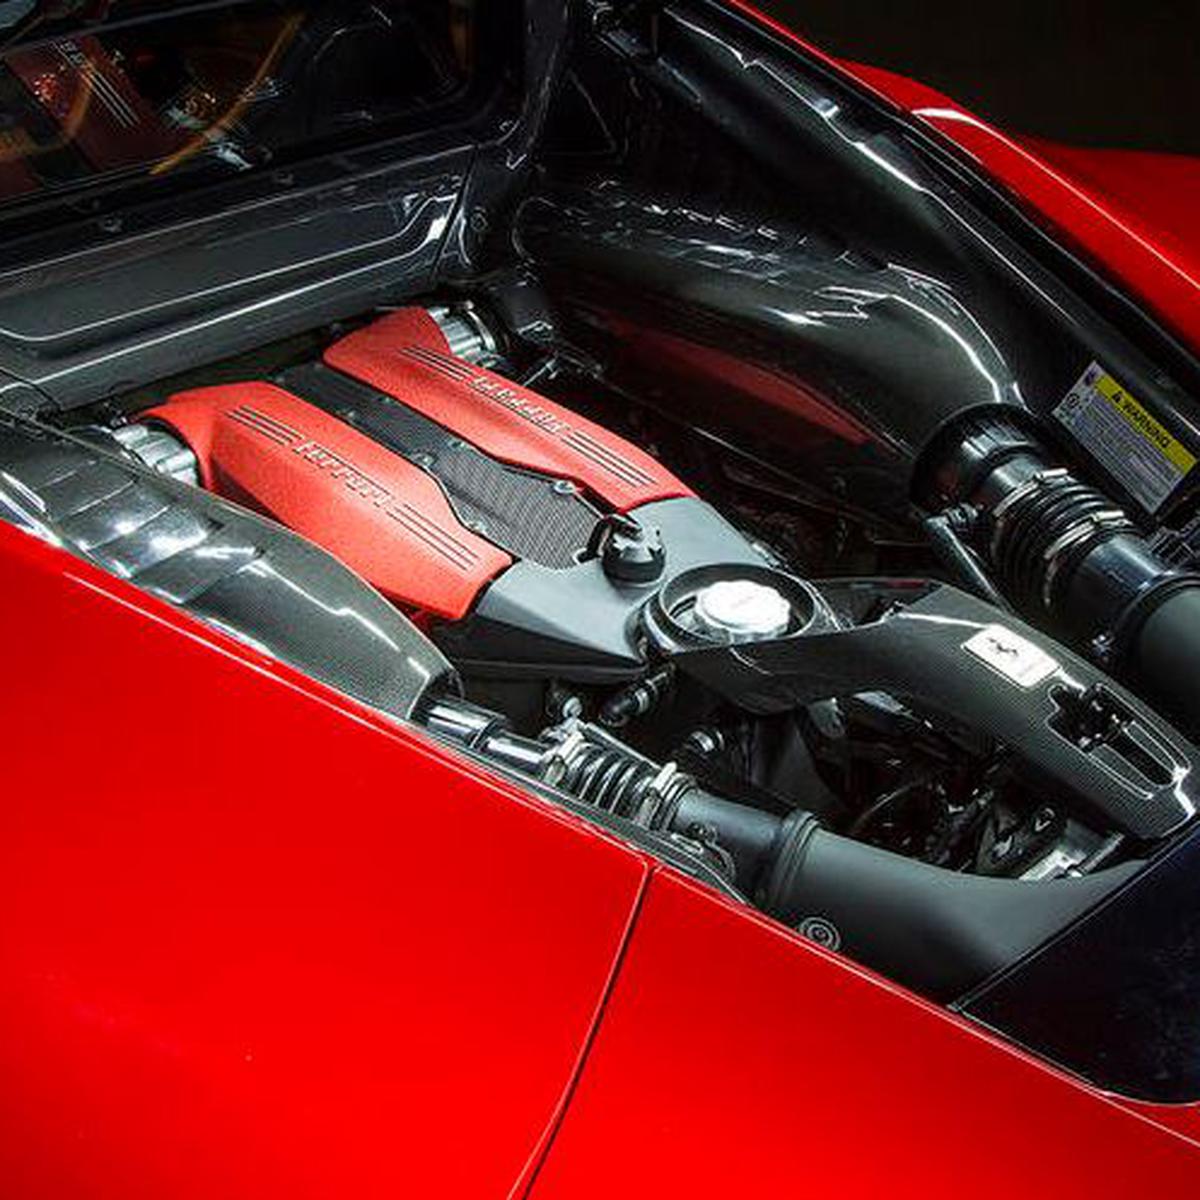 Mesin Ferrari Jadi Yang Terbaik Sejagad Otomotif Liputan6com